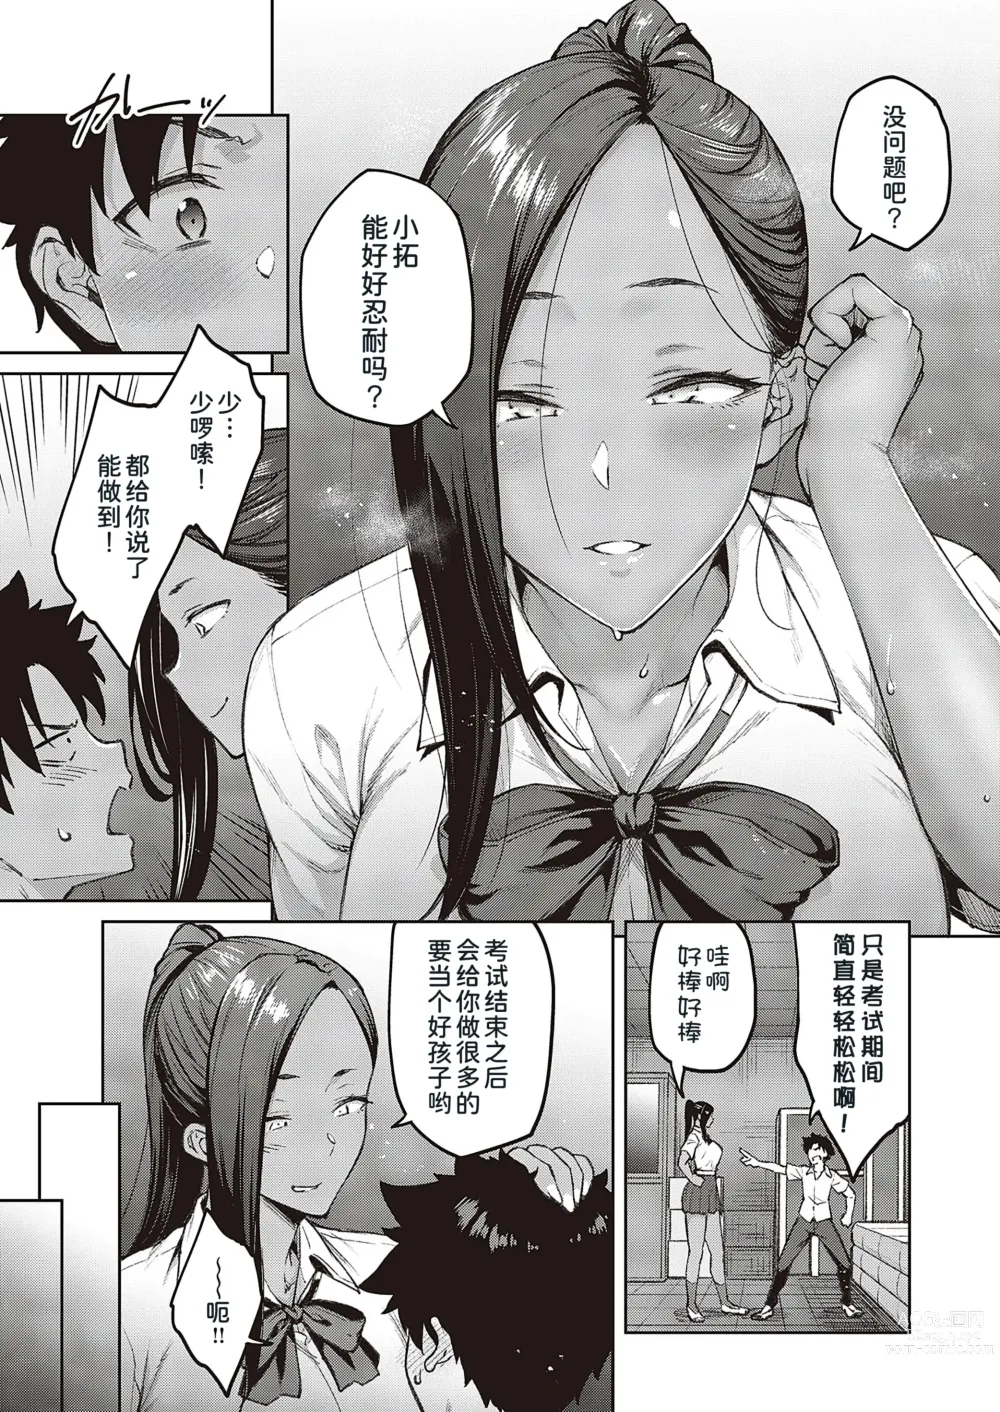 Page 6 of manga Tachiaoi 2